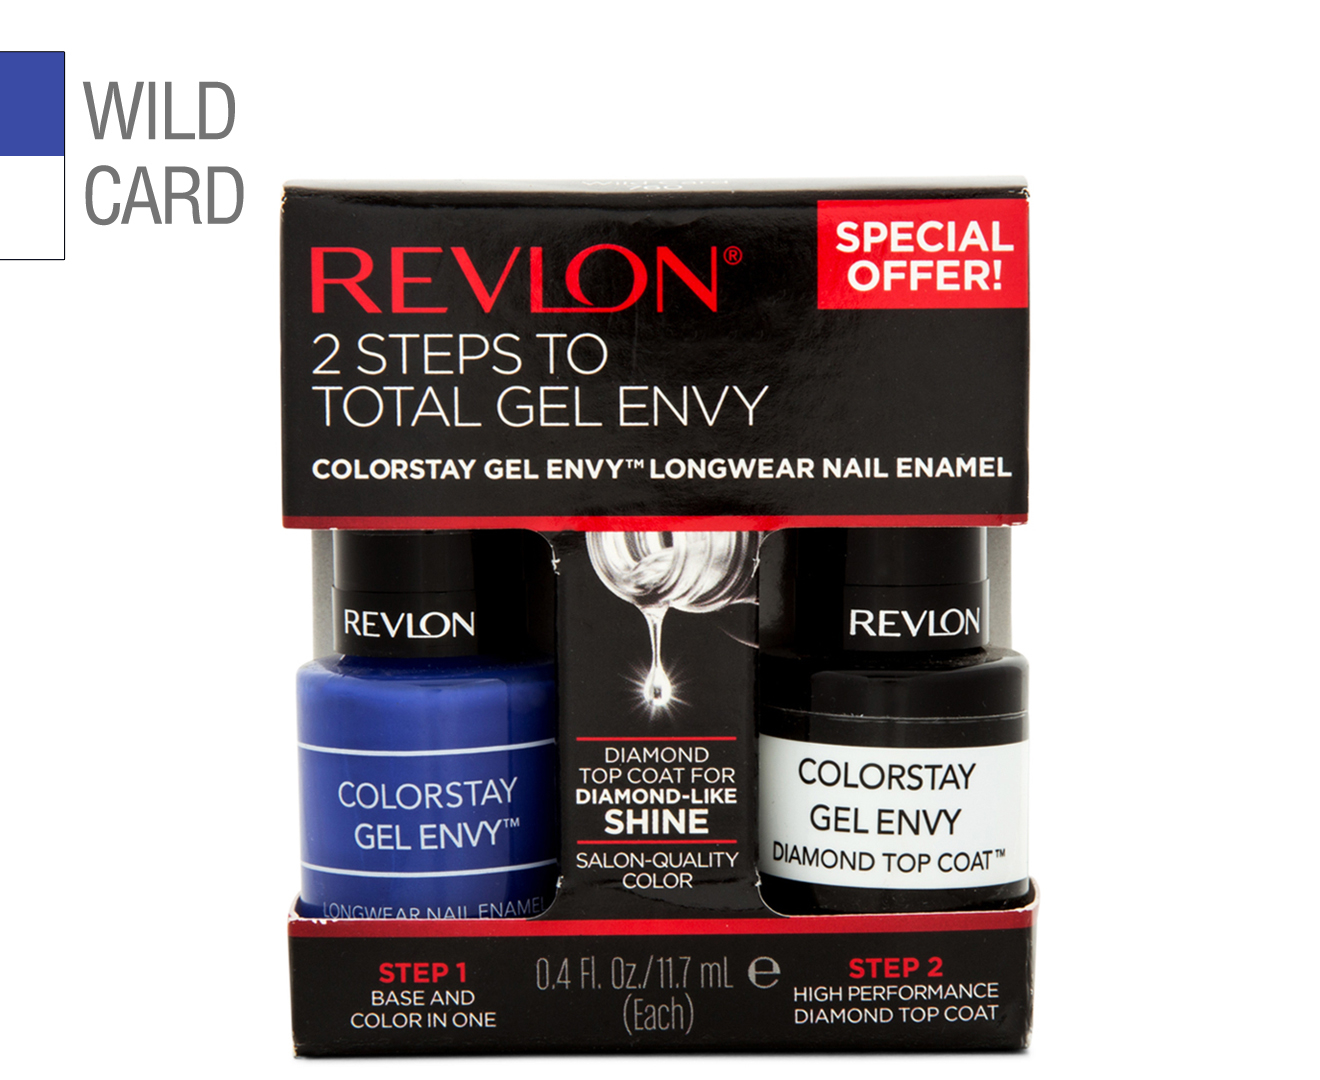 6. Revlon ColorStay Gel Envy in "Wild Card" - wide 4